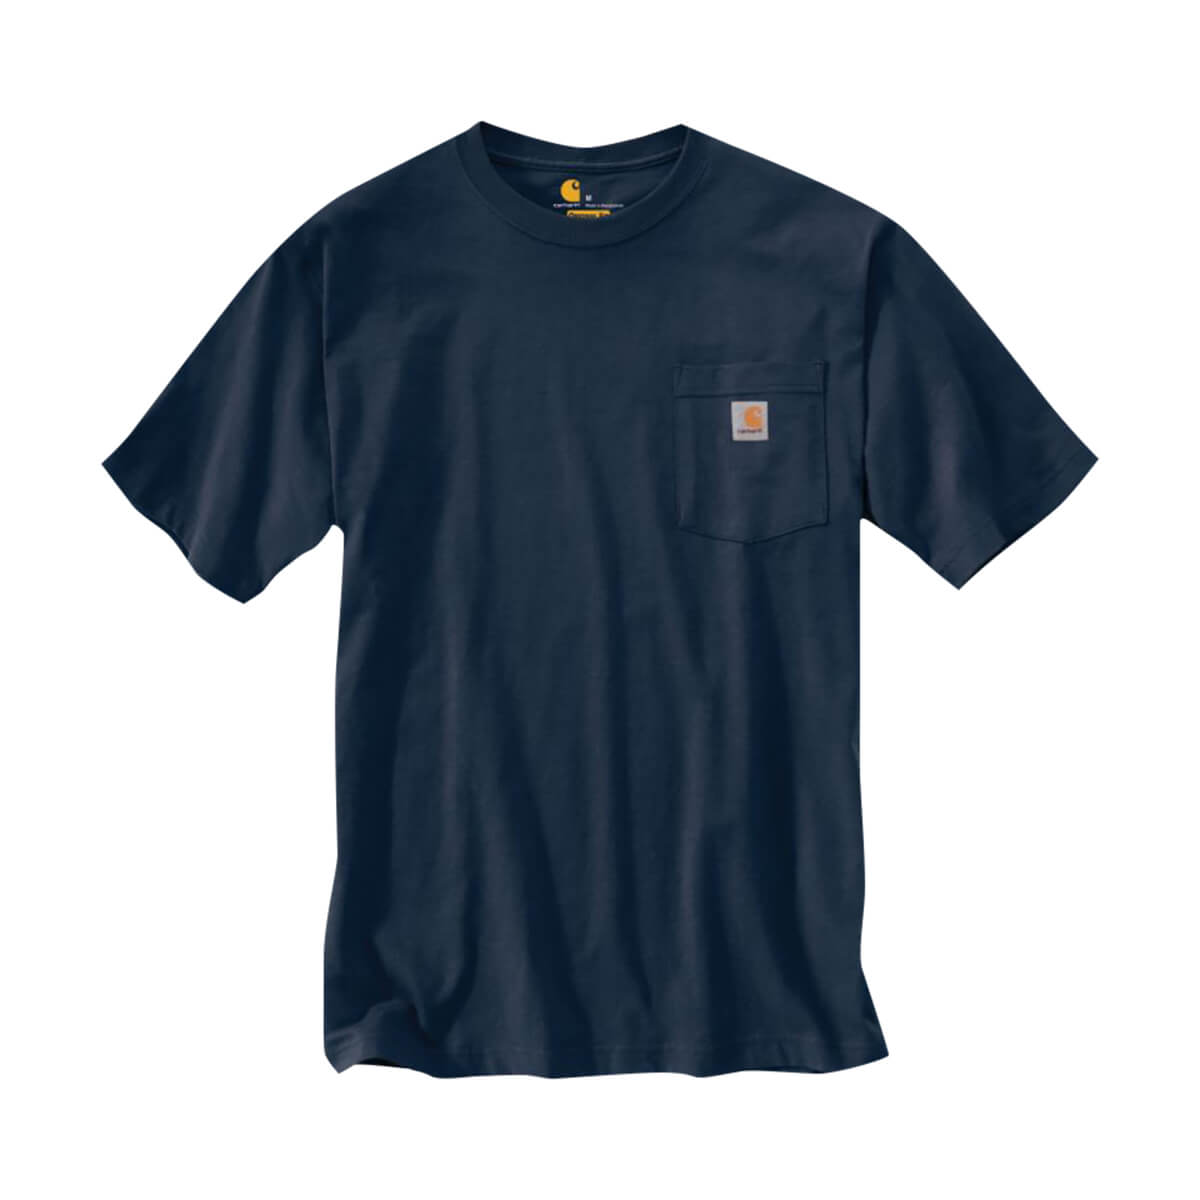 Carhartt Workwear T-Shirt - Navy